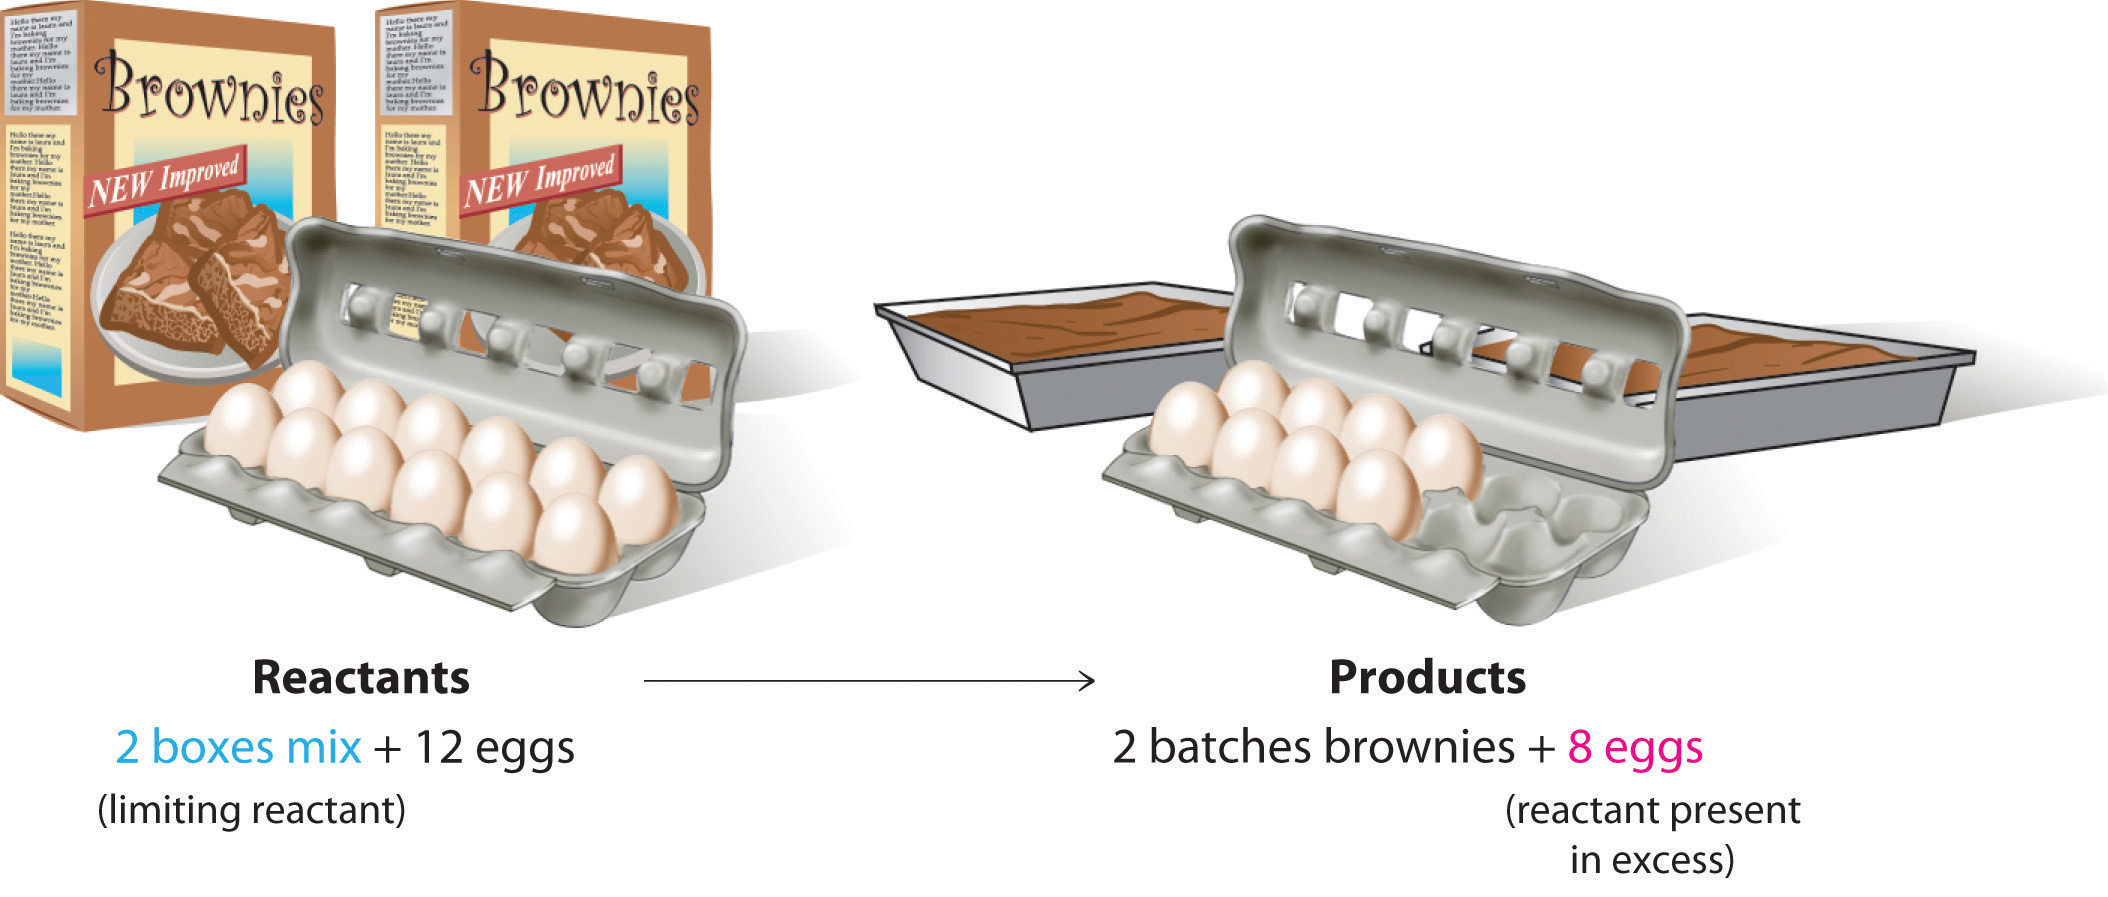 Los reactivos de 2 mezclas de caja para brownies y 12 huevos reaccionan para formar los productos de 2 lotes de brownies y 8 huevos. La mezcla de caja es el reactivo limitante y los huevos son los reactivos presentes en exceso.